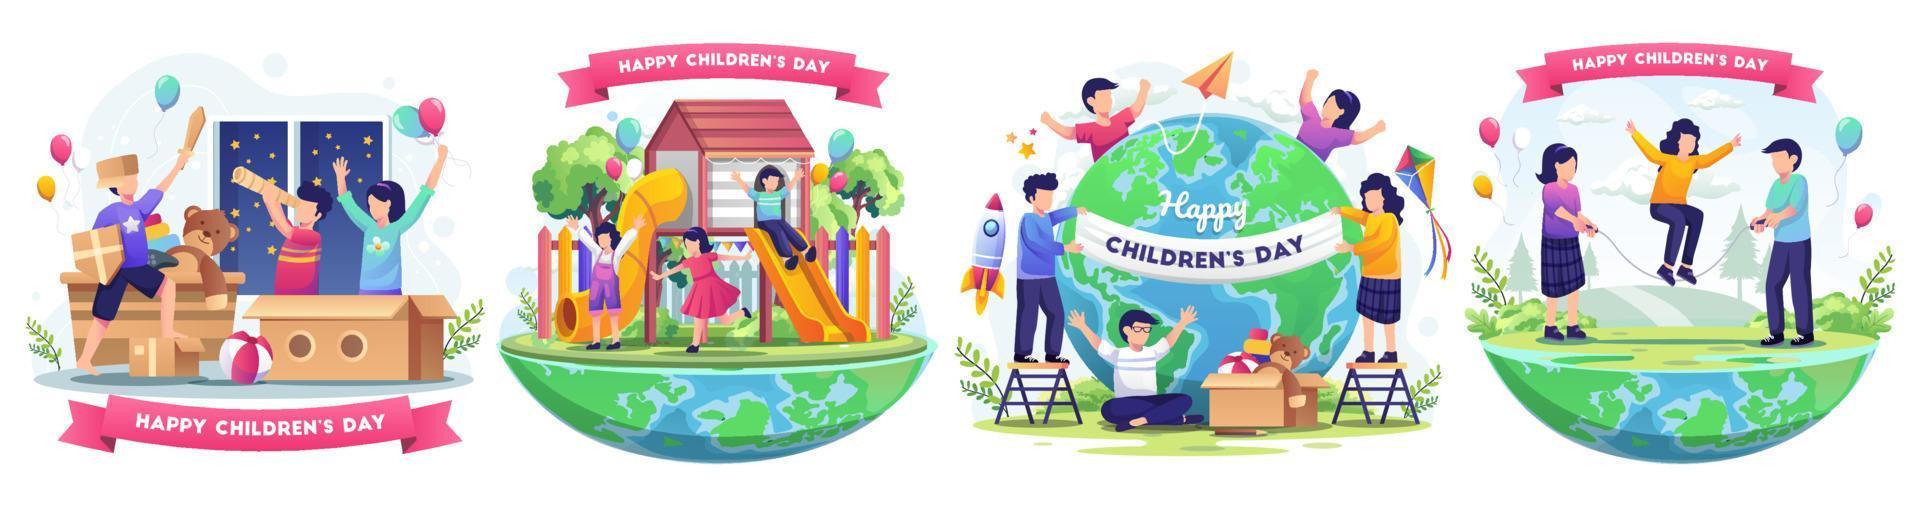 Kindertag mit glücklichen Kindern auf der ganzen Welt und mit Dekoration beschäftigt. flache Vektorillustration vektor